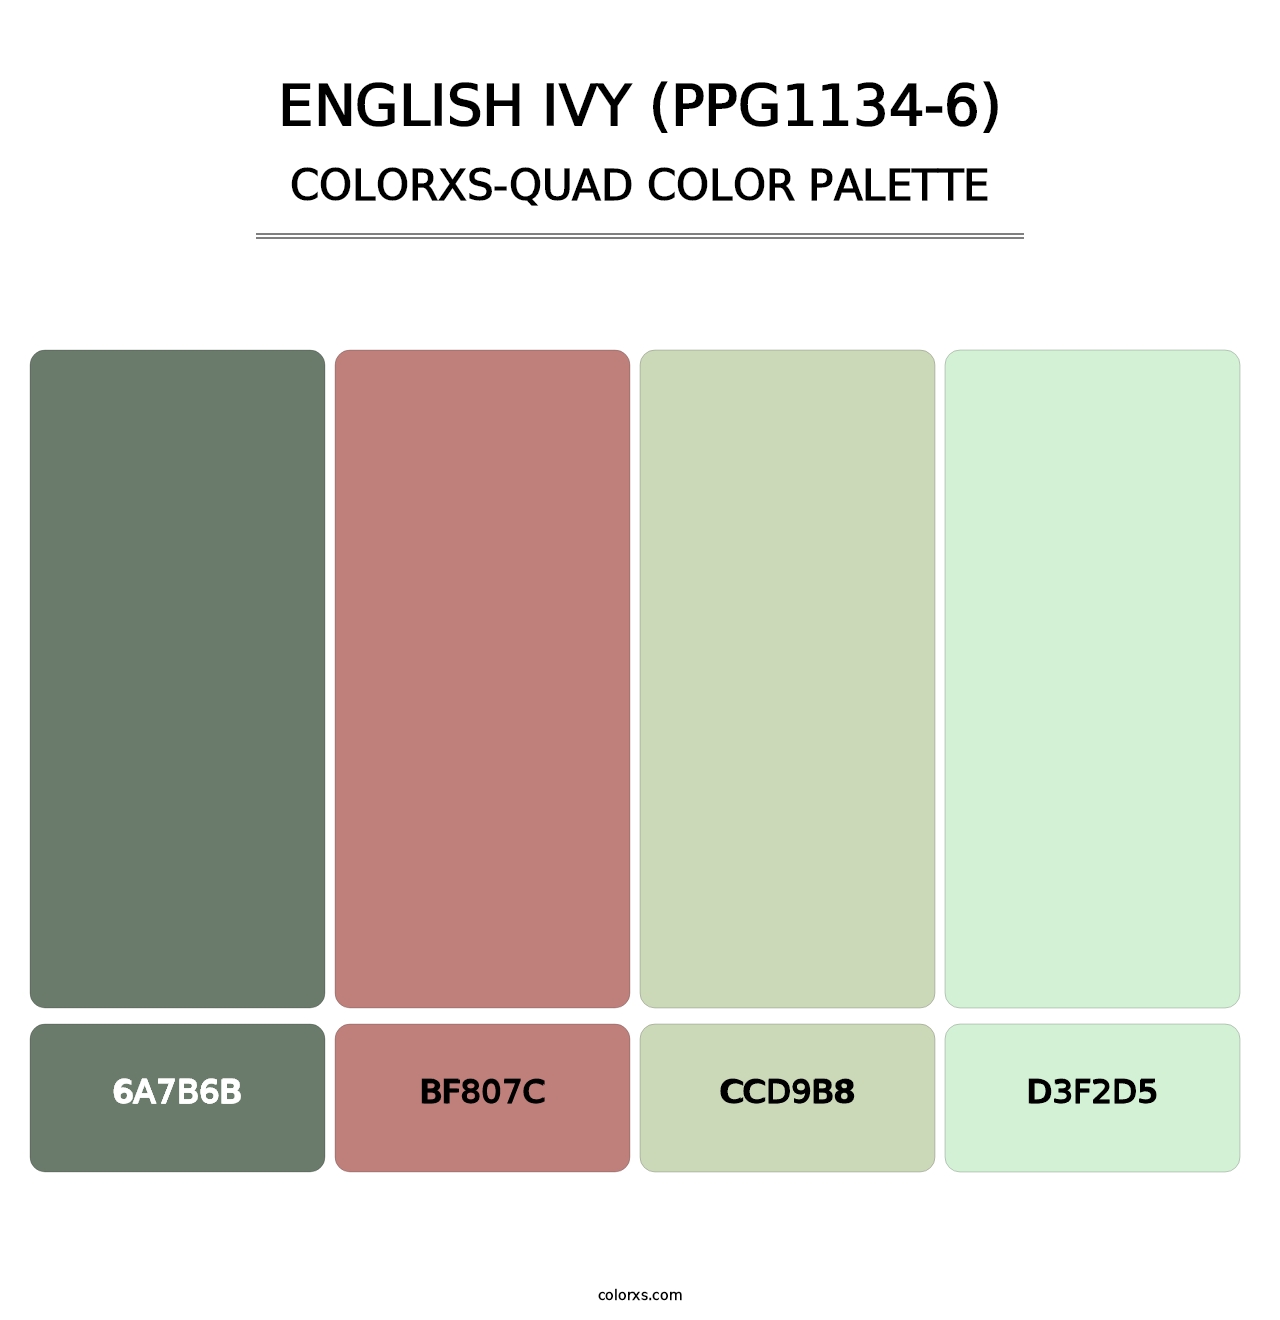 English Ivy (PPG1134-6) - Colorxs Quad Palette